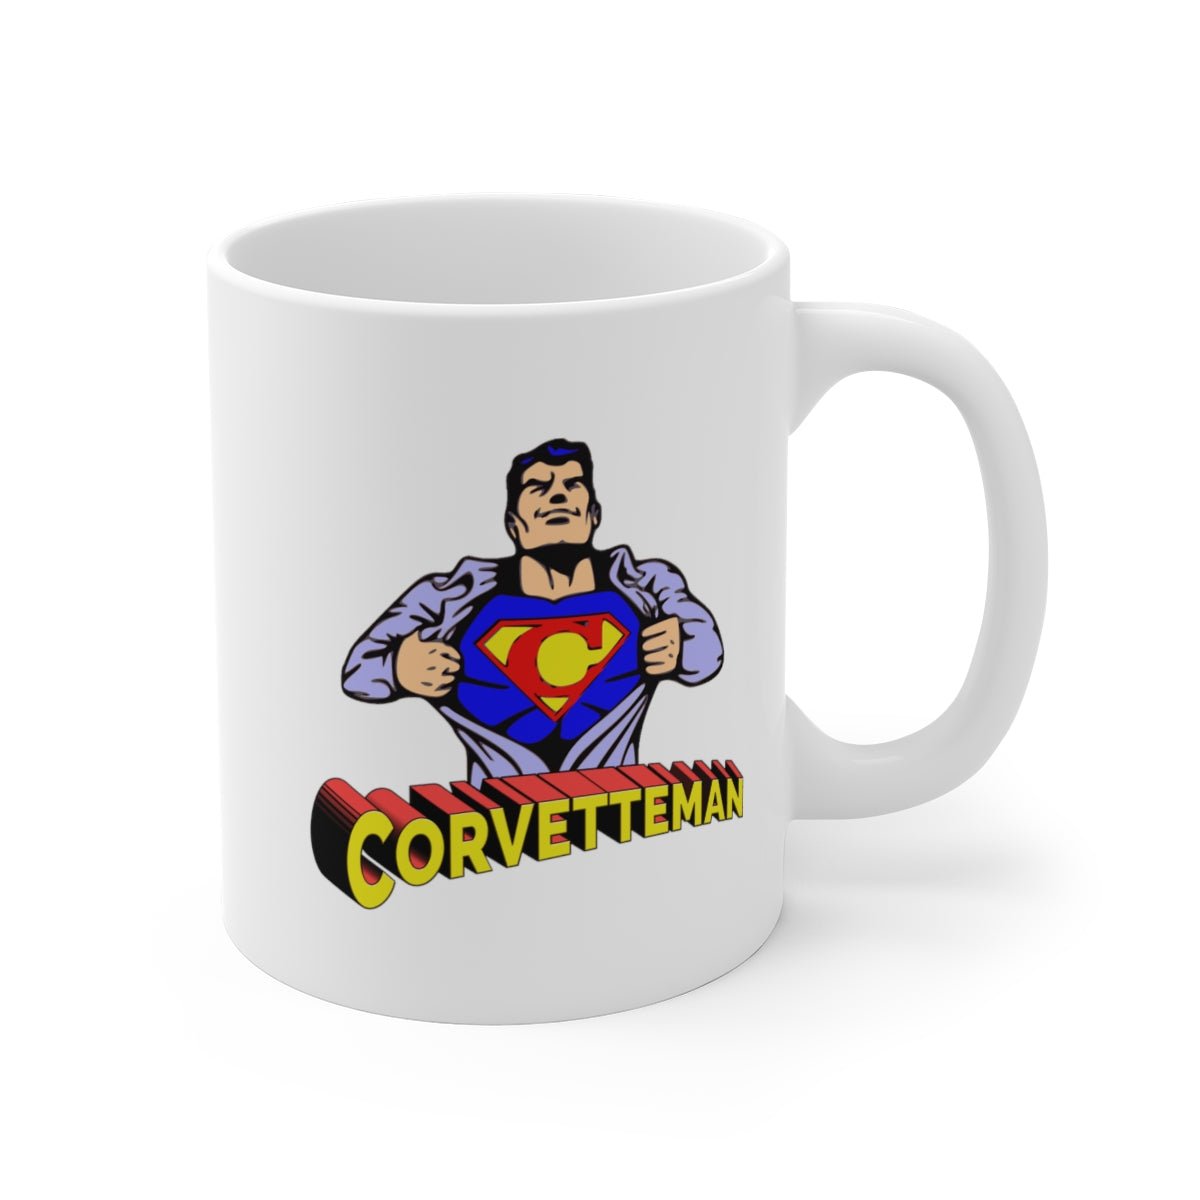 Corvetteman Coffee Mug 11oz, 15oz, 20oz - Vette1 - Misc. Coffee Mugs